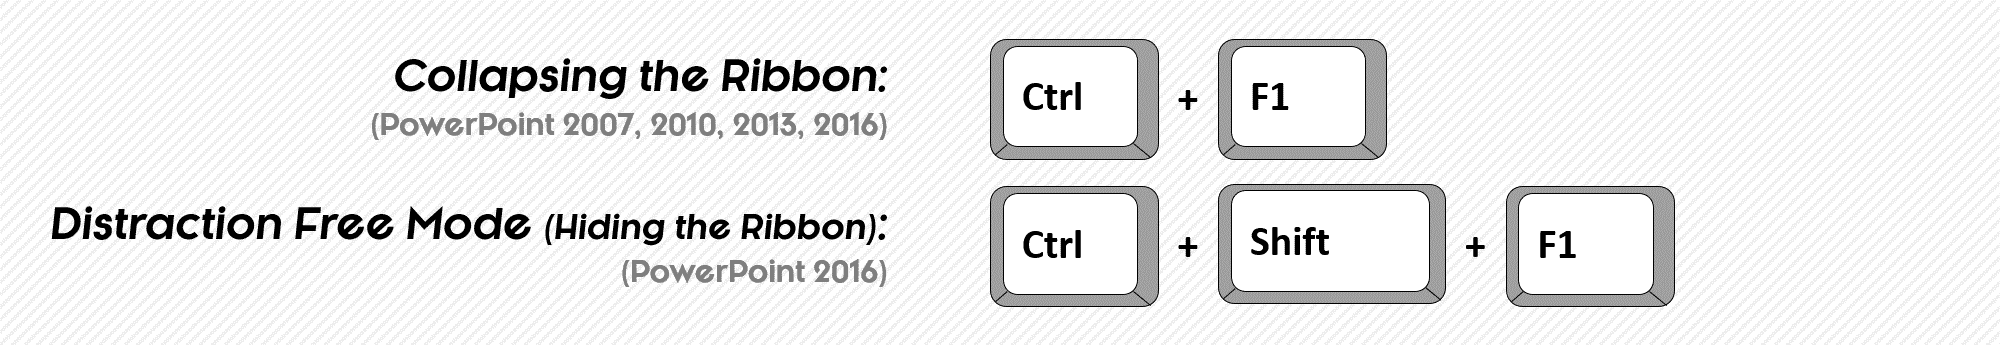 presentation slide keyboard shortcut